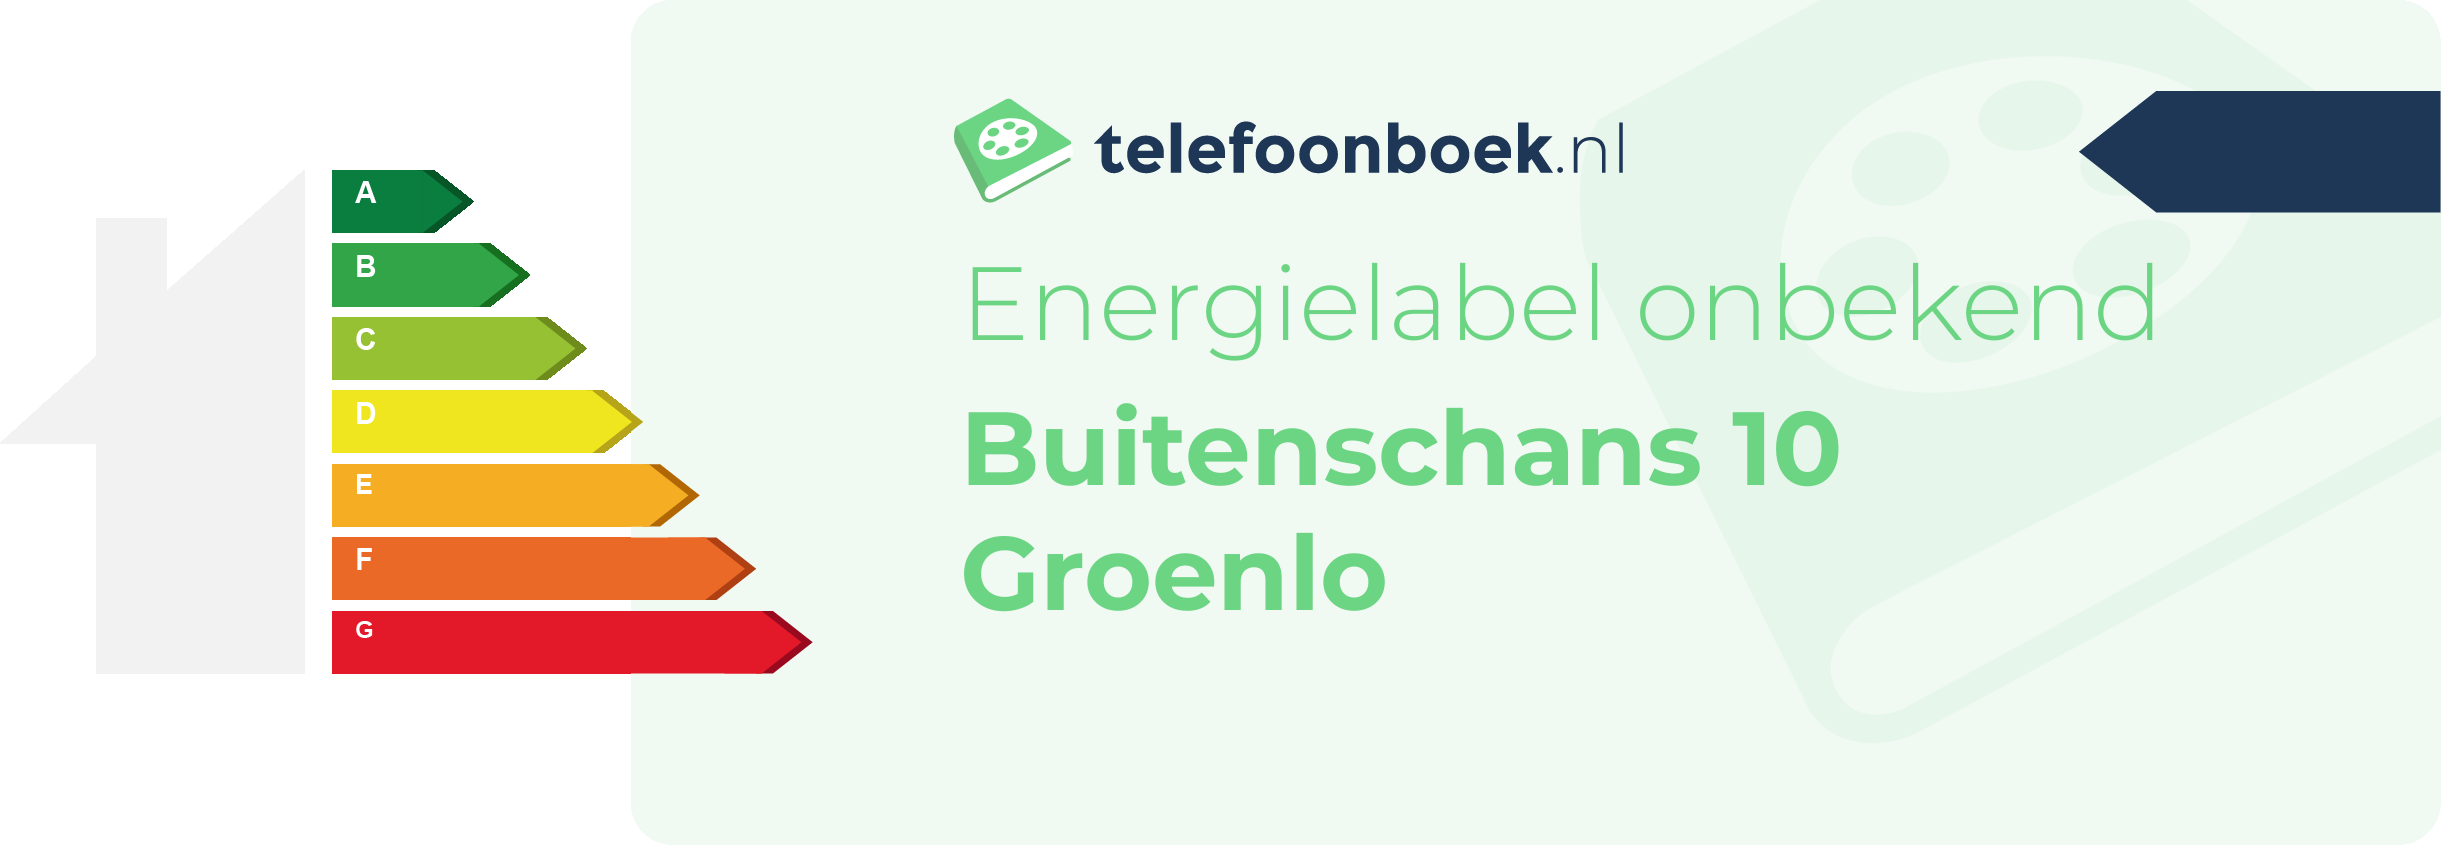 Energielabel Buitenschans 10 Groenlo